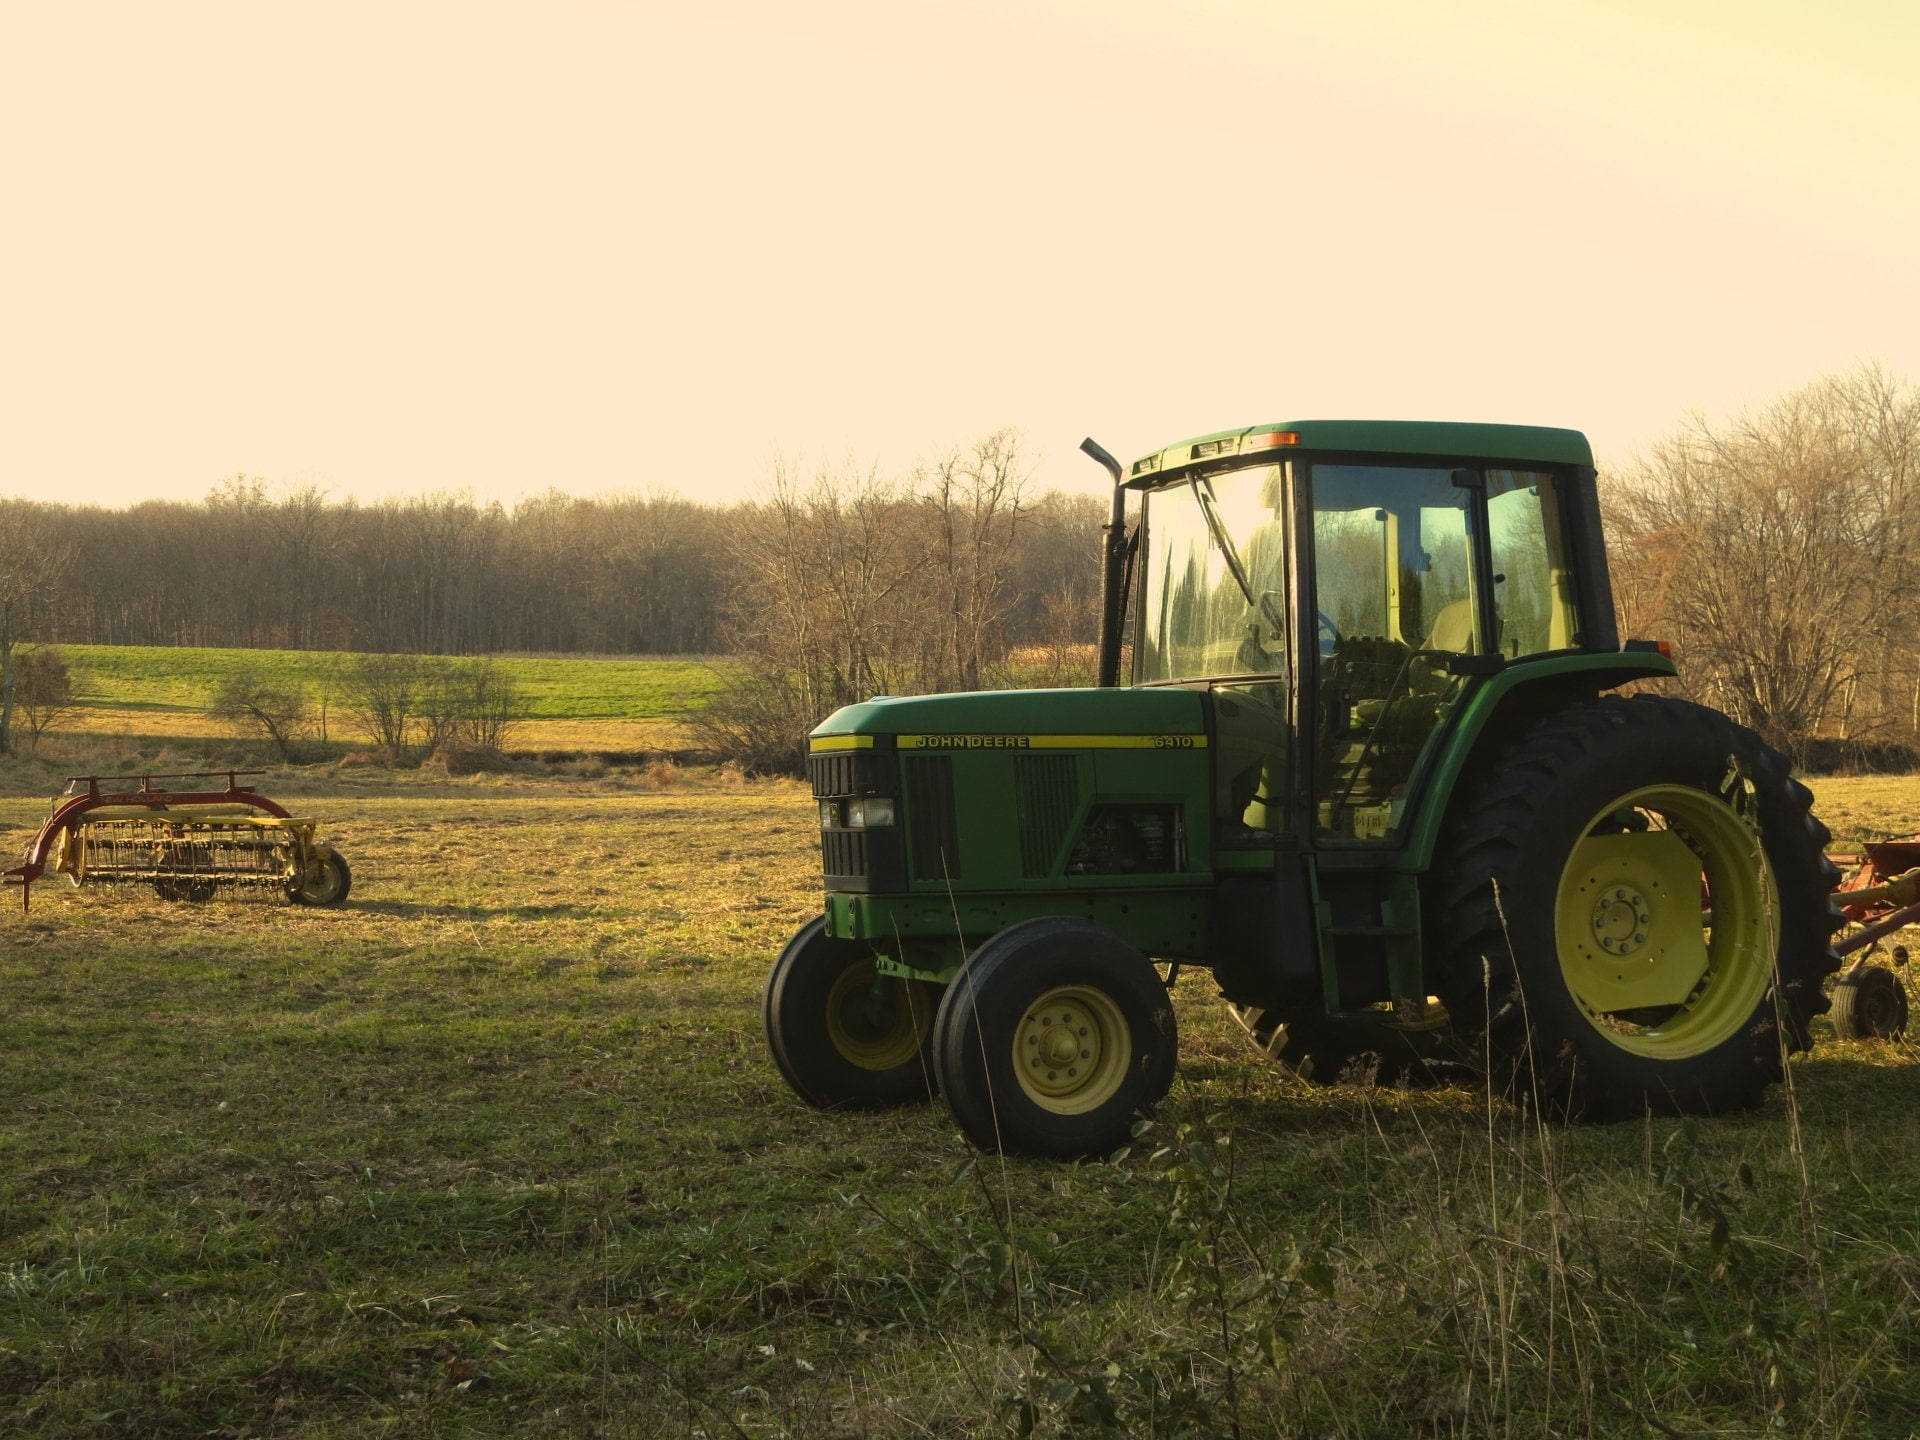 John Deere Tractor In Sunset Field